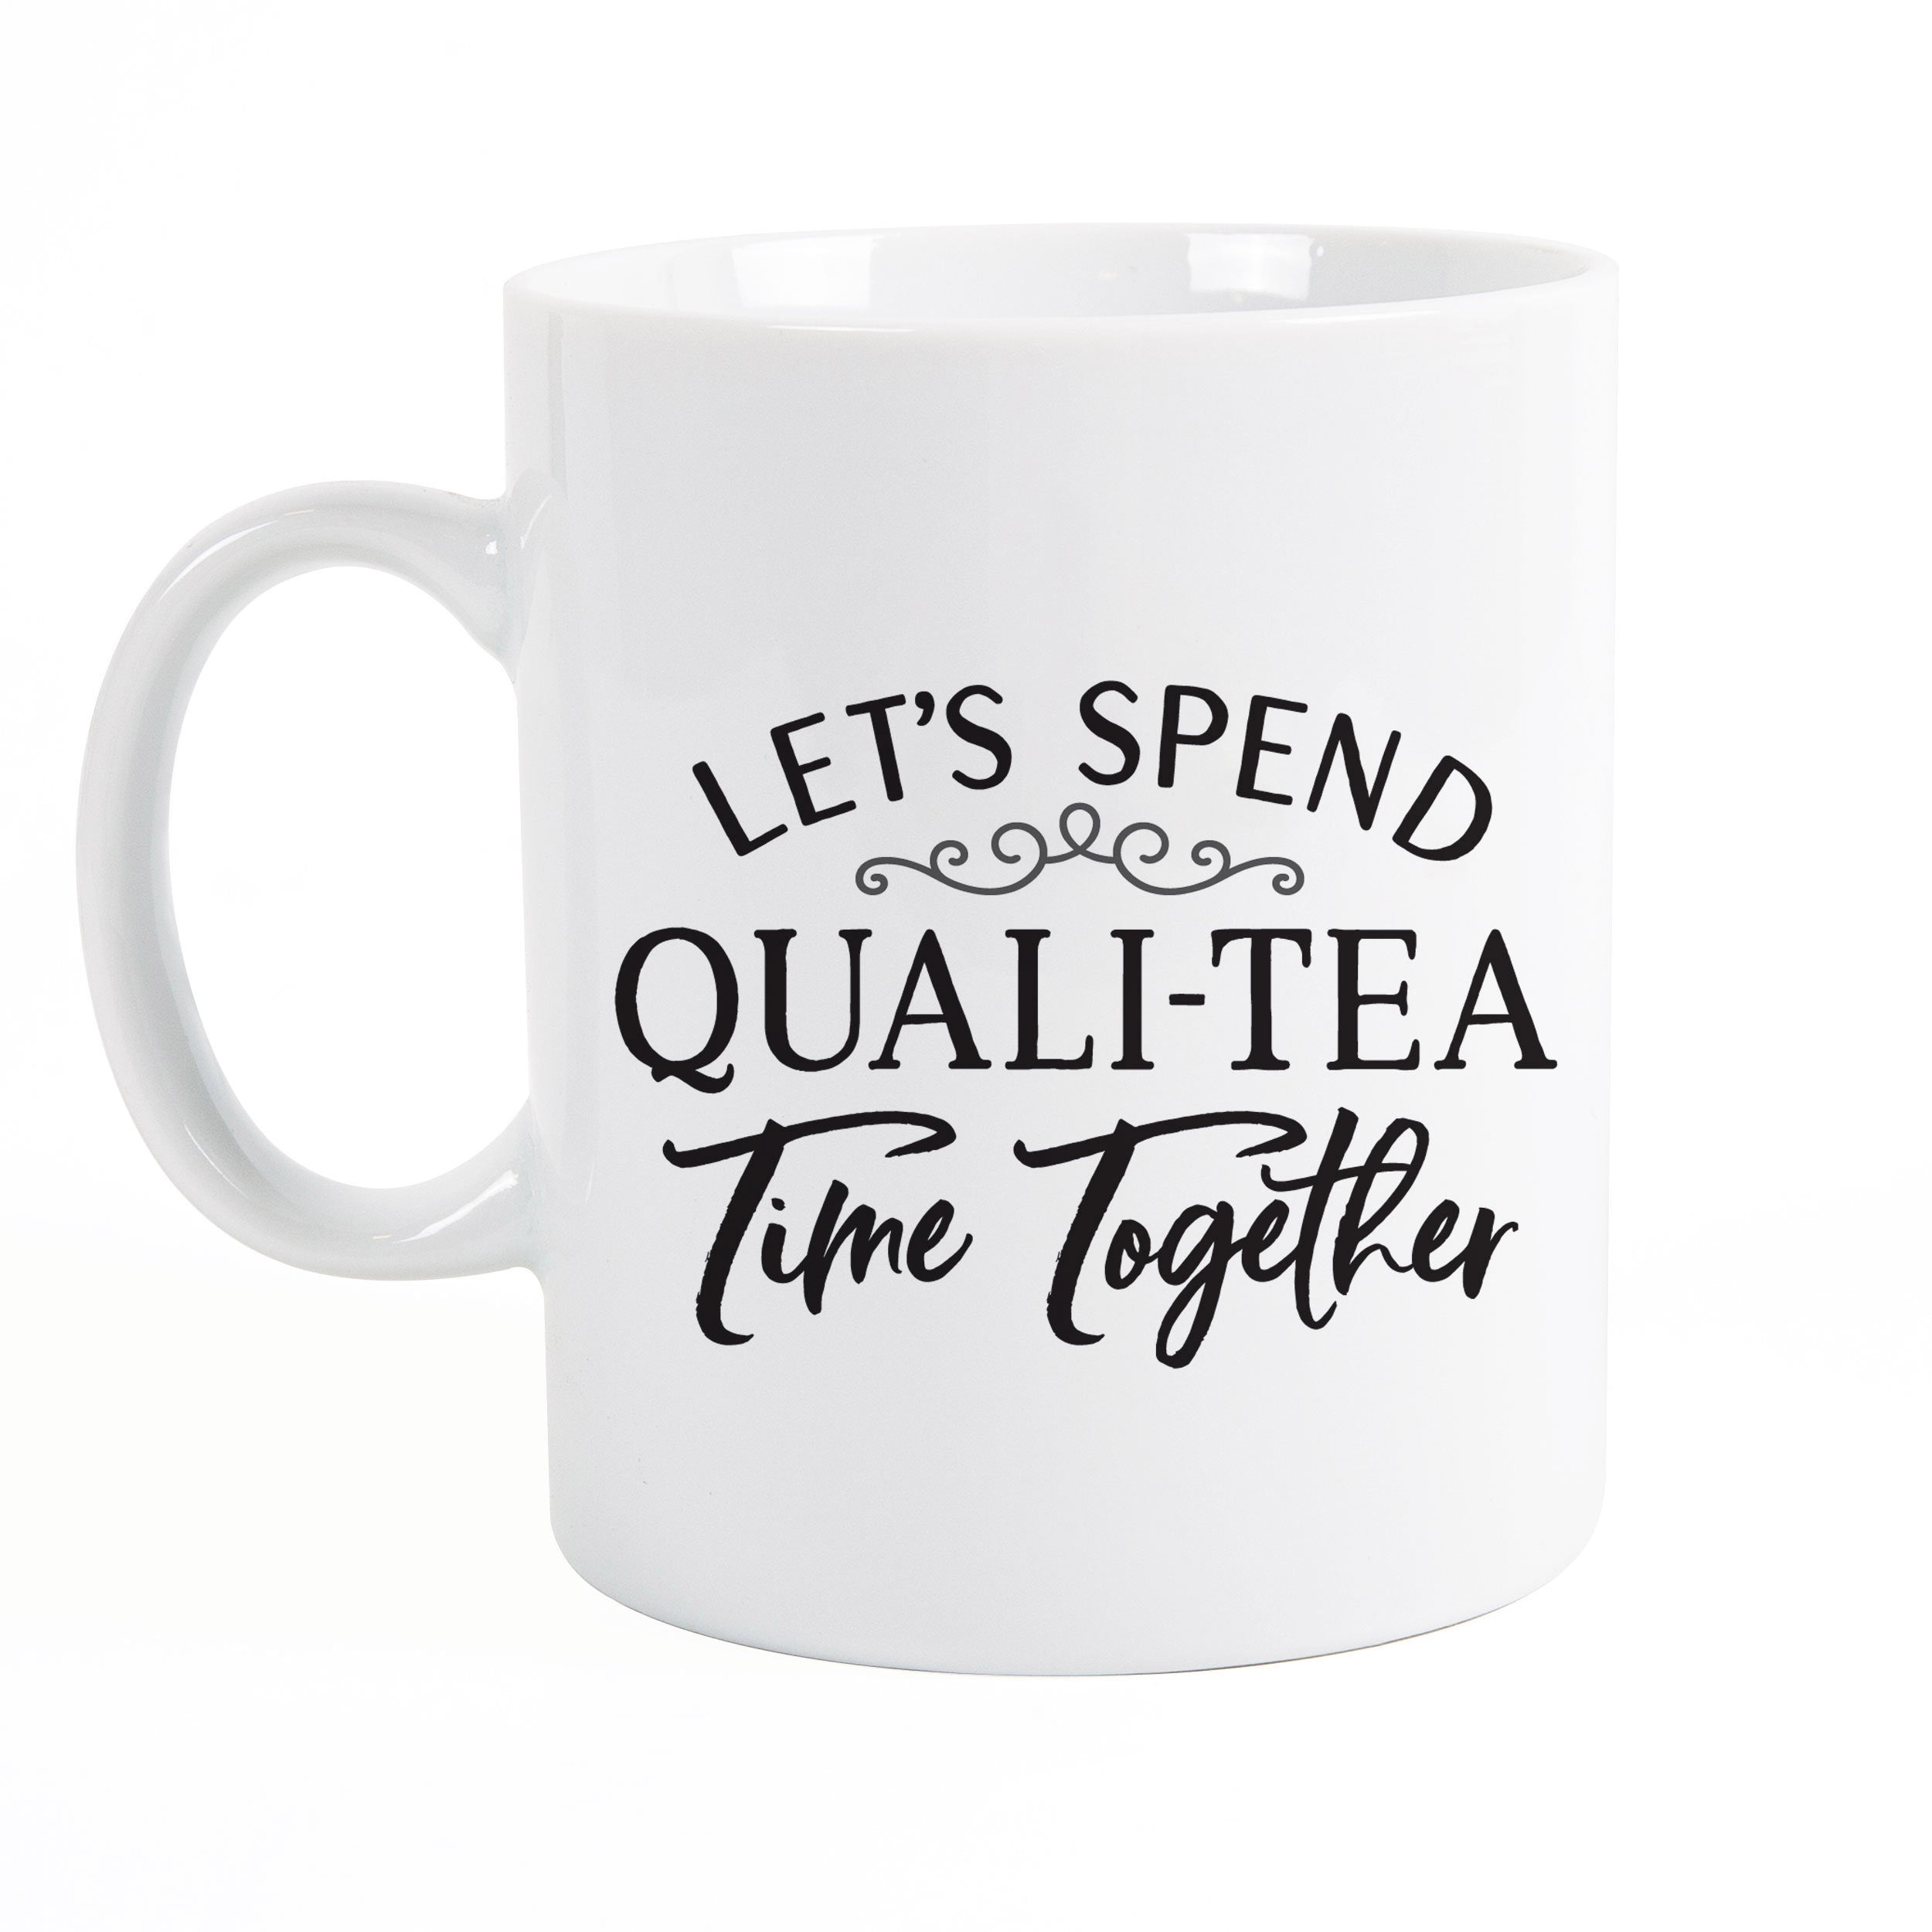 ****Let's Spend Quali-tea Time Together Mug